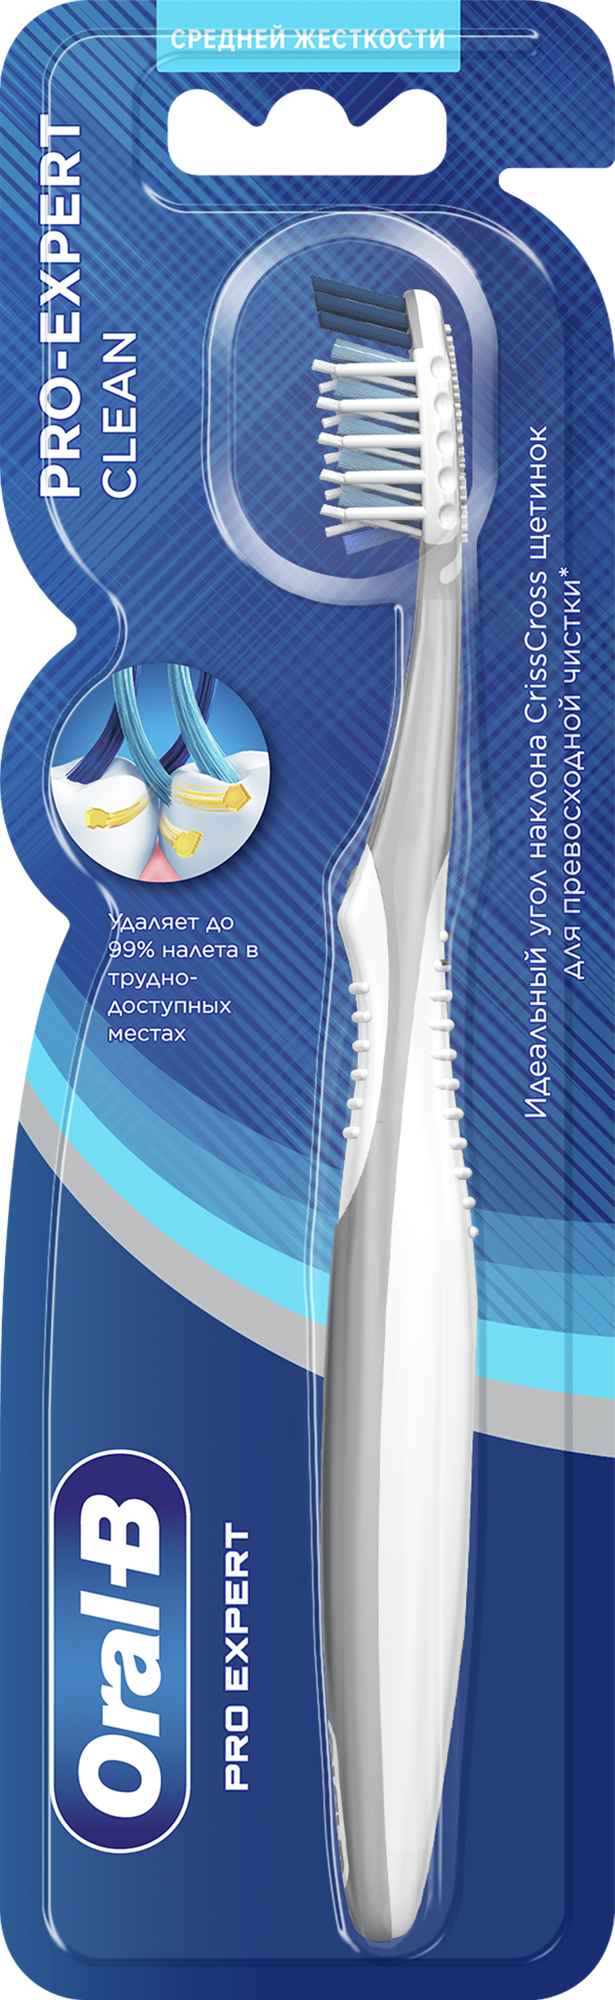 Зубная Щетка Oral-B Pro-Expert Clean Средней жесткости, 1 шт. — купить в интернет-магазине по низкой цене на Яндекс Маркете